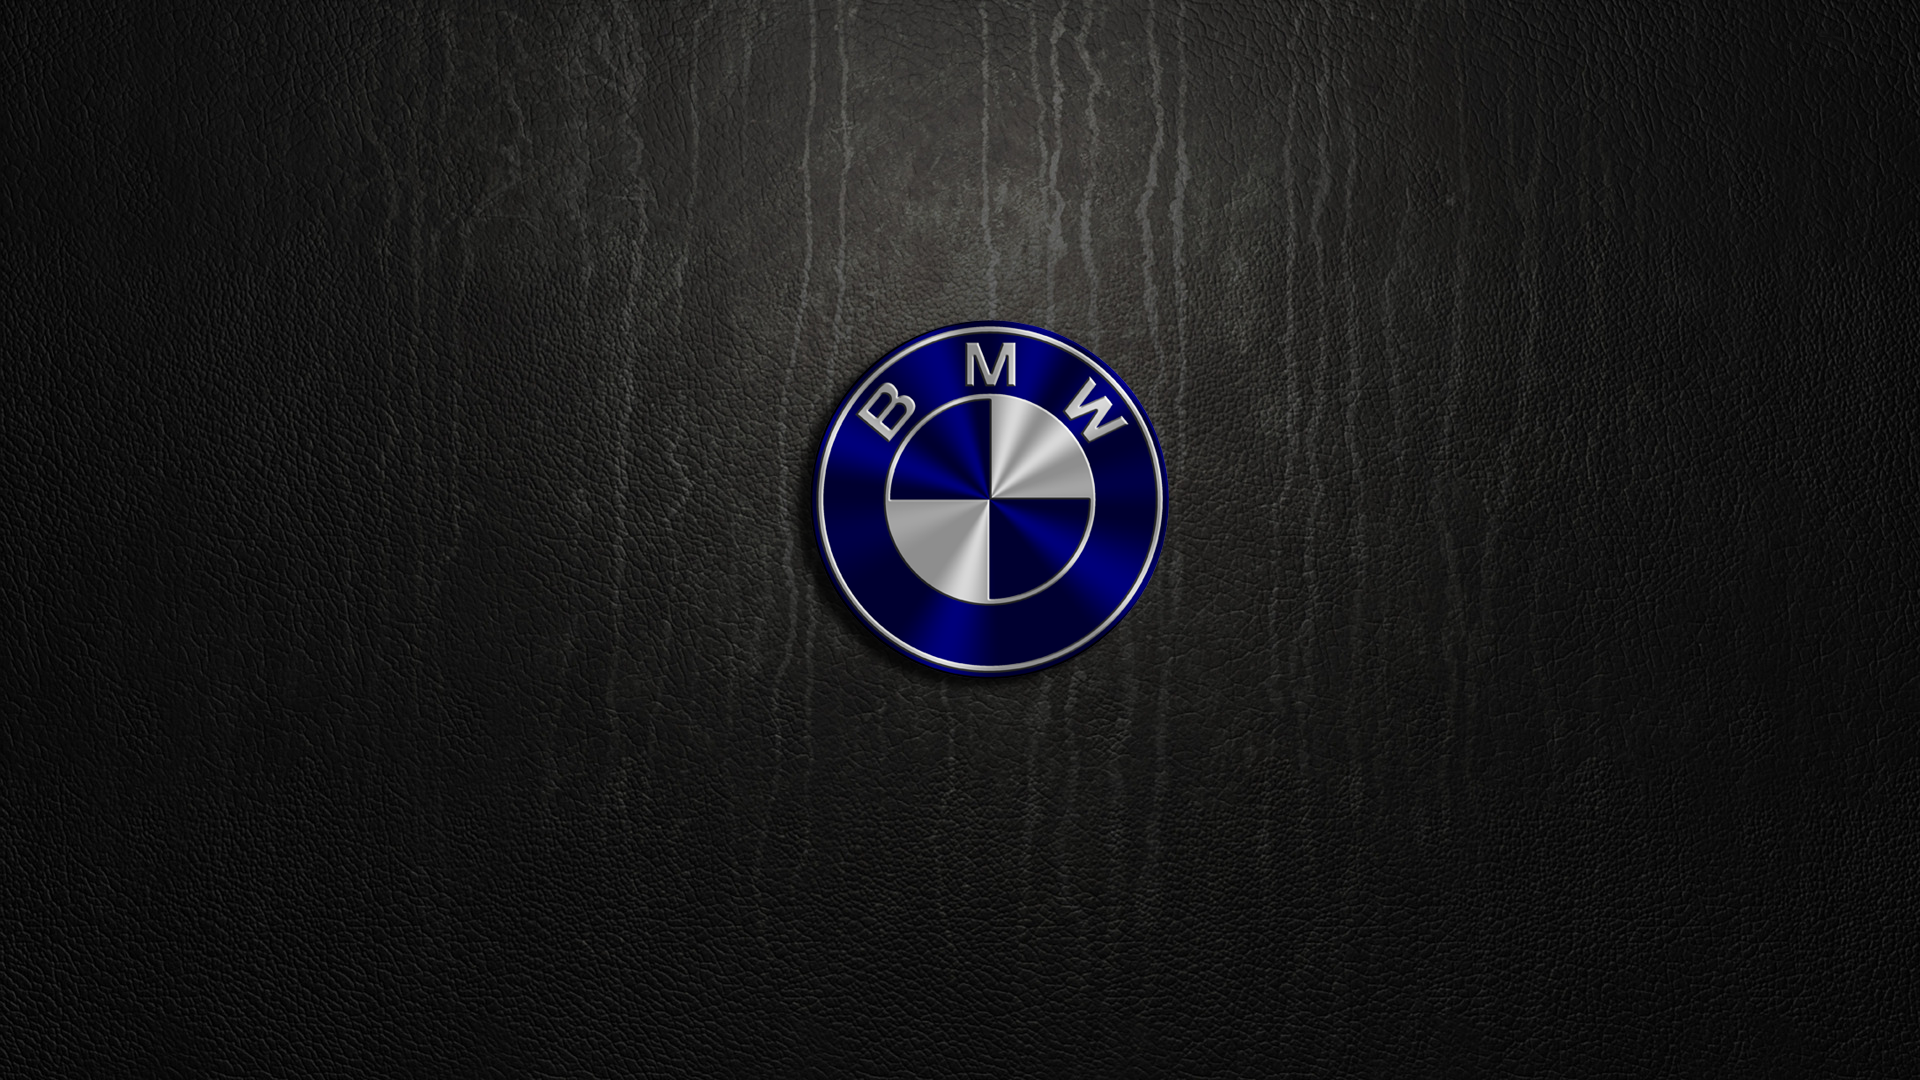 BMW Logo Desktop Wallpaper 58883 1920x1080px